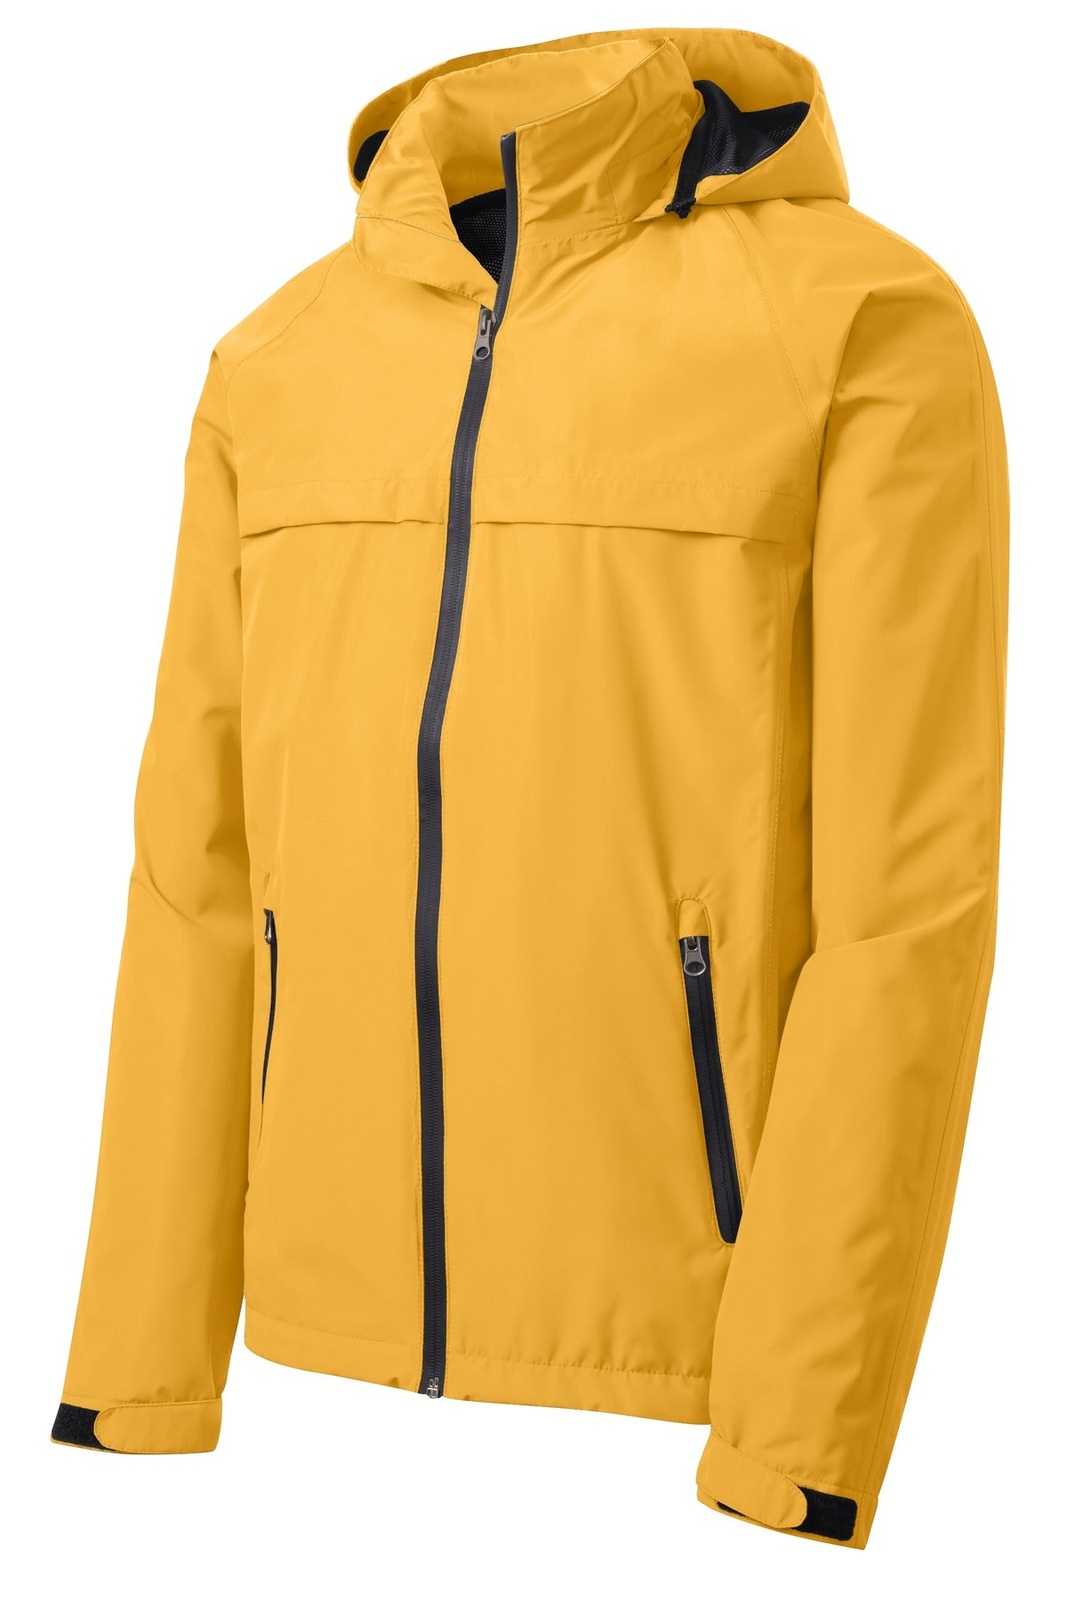 Port Authority J333 Torrent Waterproof Jacket - Slicker Yellow - HIT a Double - 5